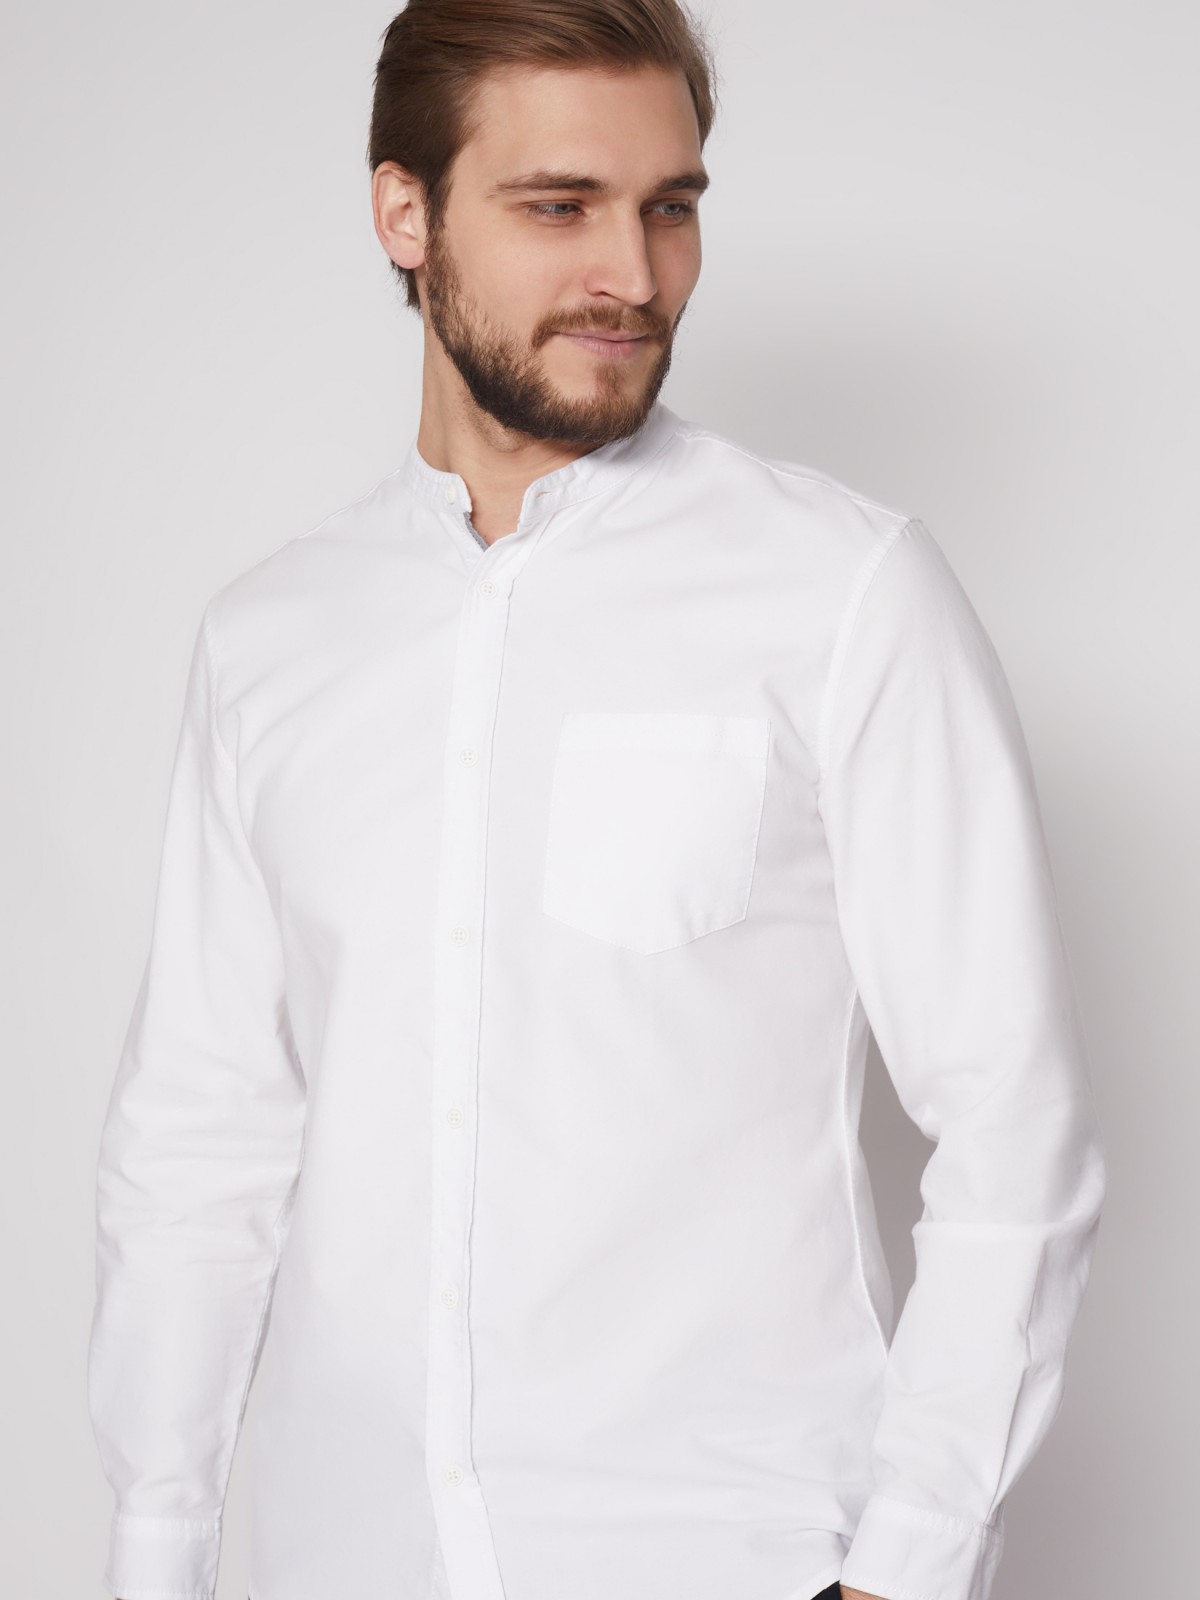 Рубашка с воротником-стойкой zolla 212132191013, цвет белый, размер S - фото 5